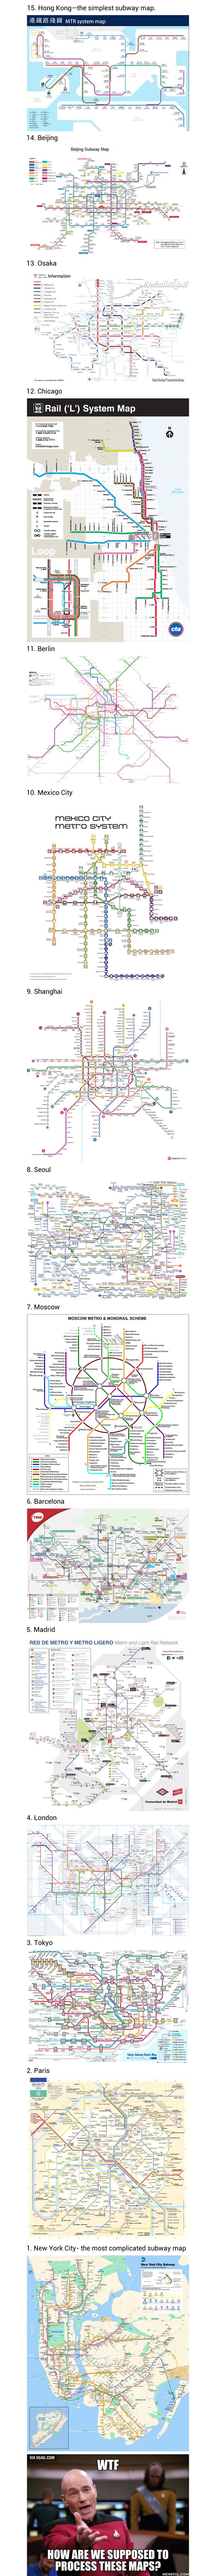 KOJI SVJETSKI GRAD ima najkompliciraniju mrežu podzemne željeznice?